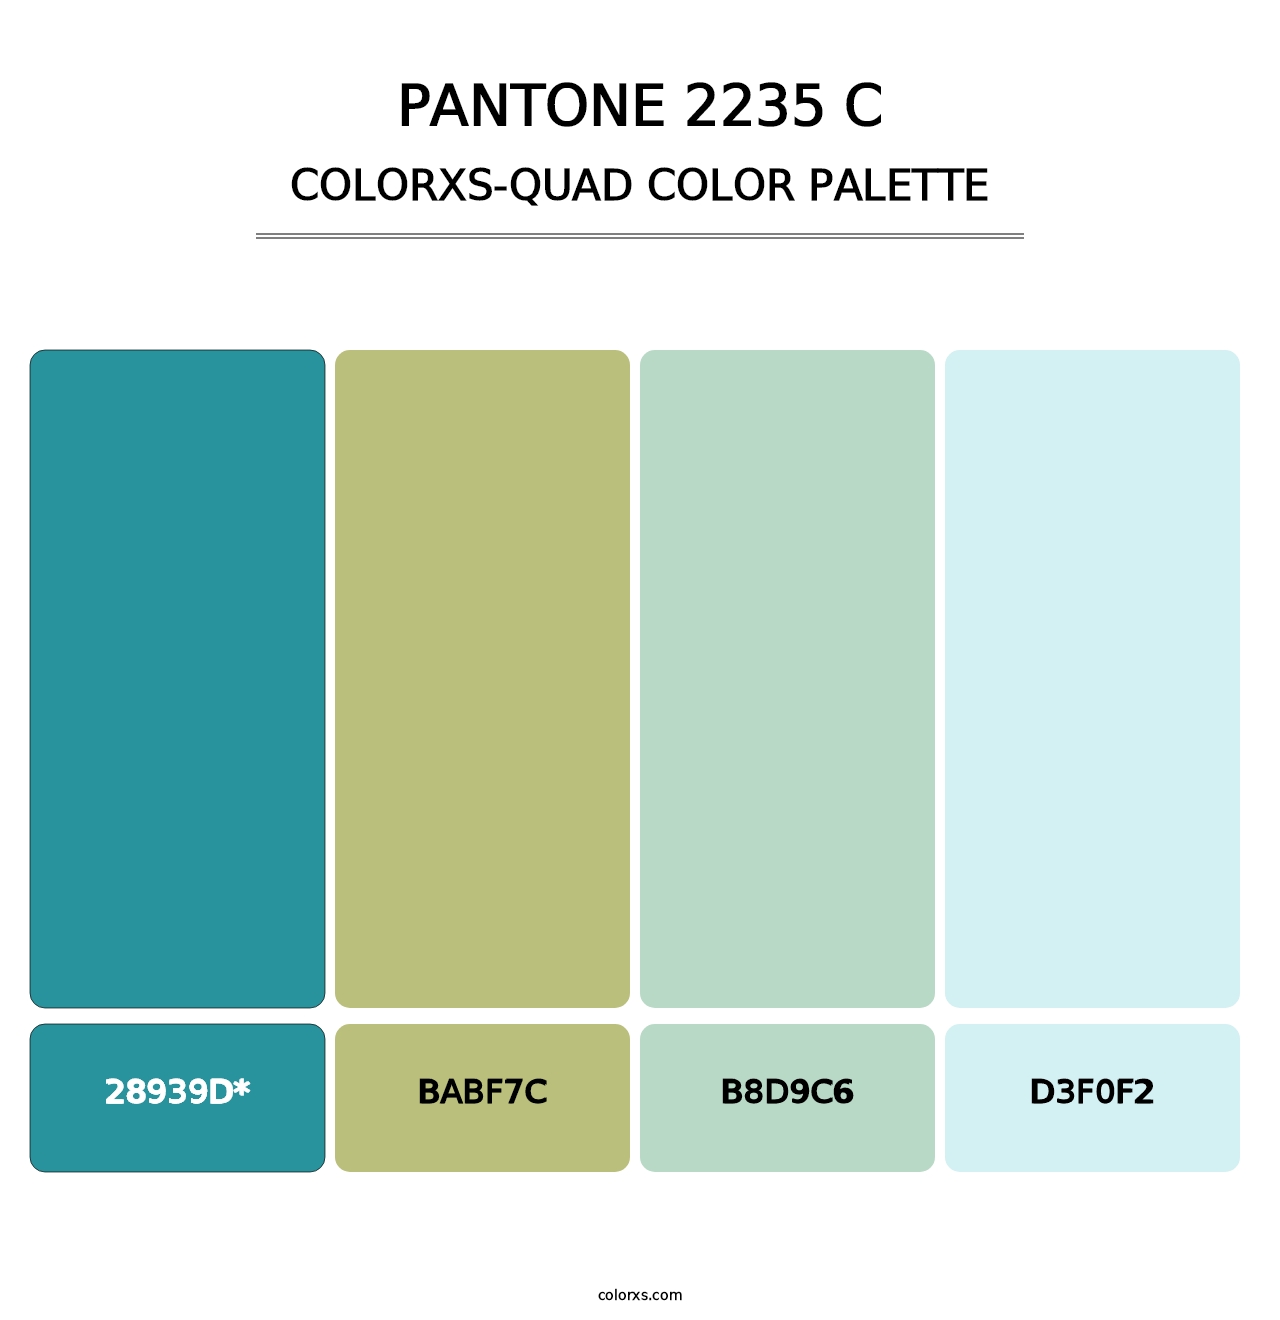 PANTONE 2235 C - Colorxs Quad Palette